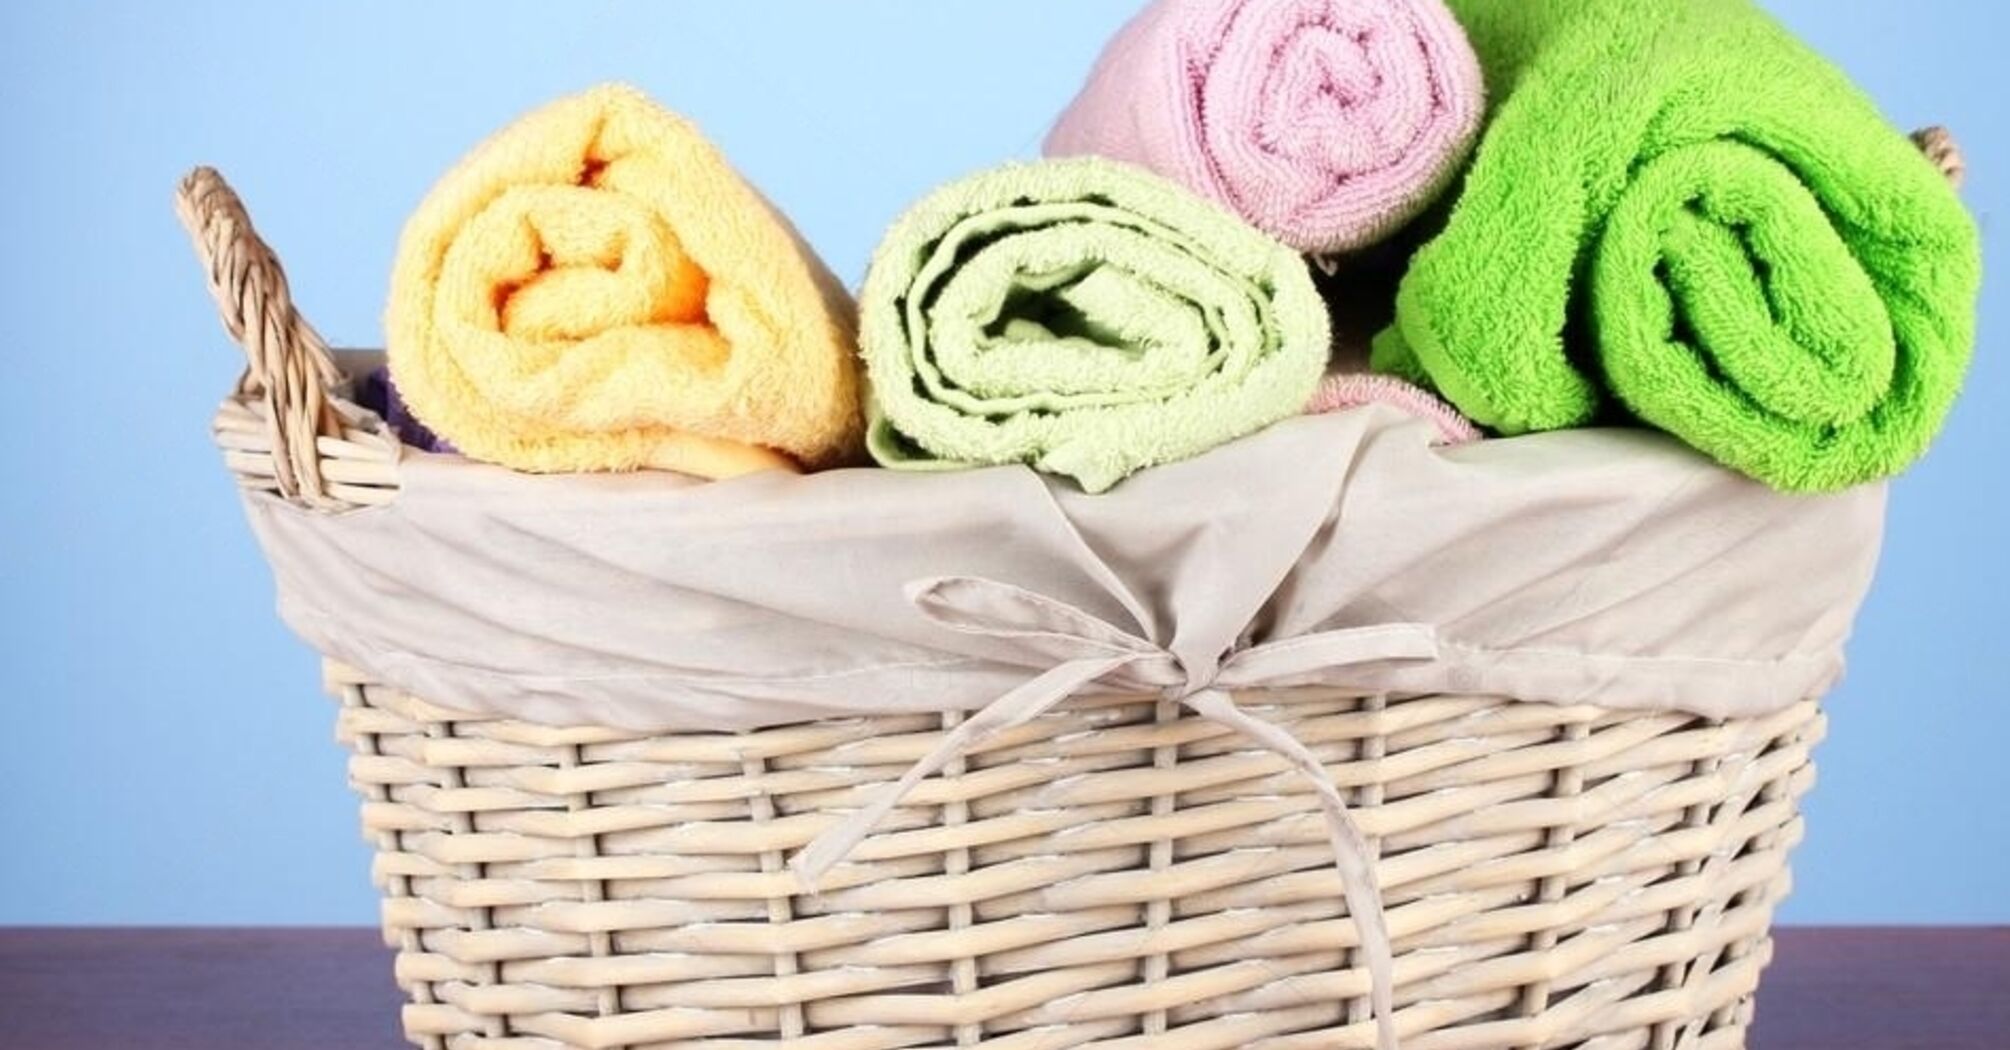 Не спешите выбрасывать: какие полезные вещи для быта можно сделать из старых полотенец